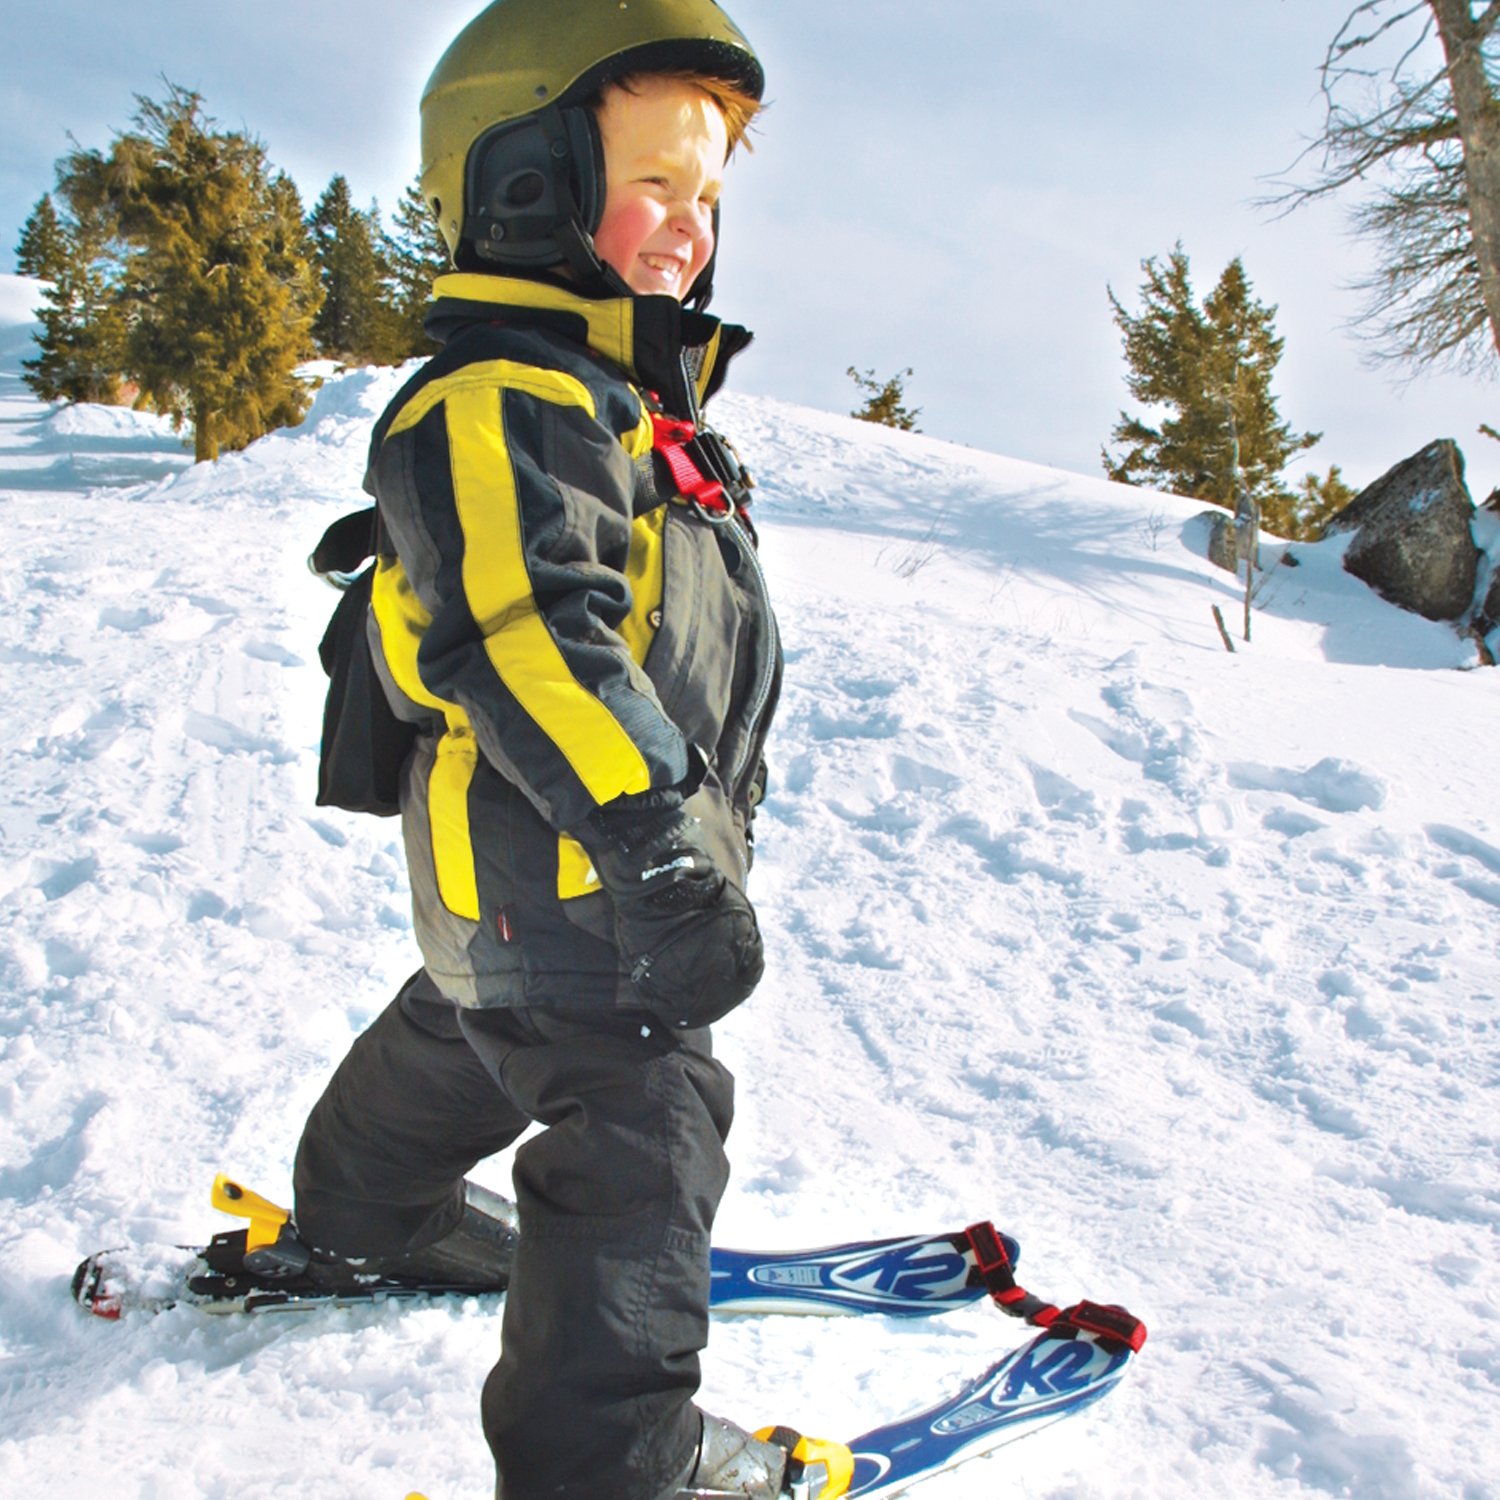 gitaar Cerebrum hanger Tip voor skiën met kleine kinderen